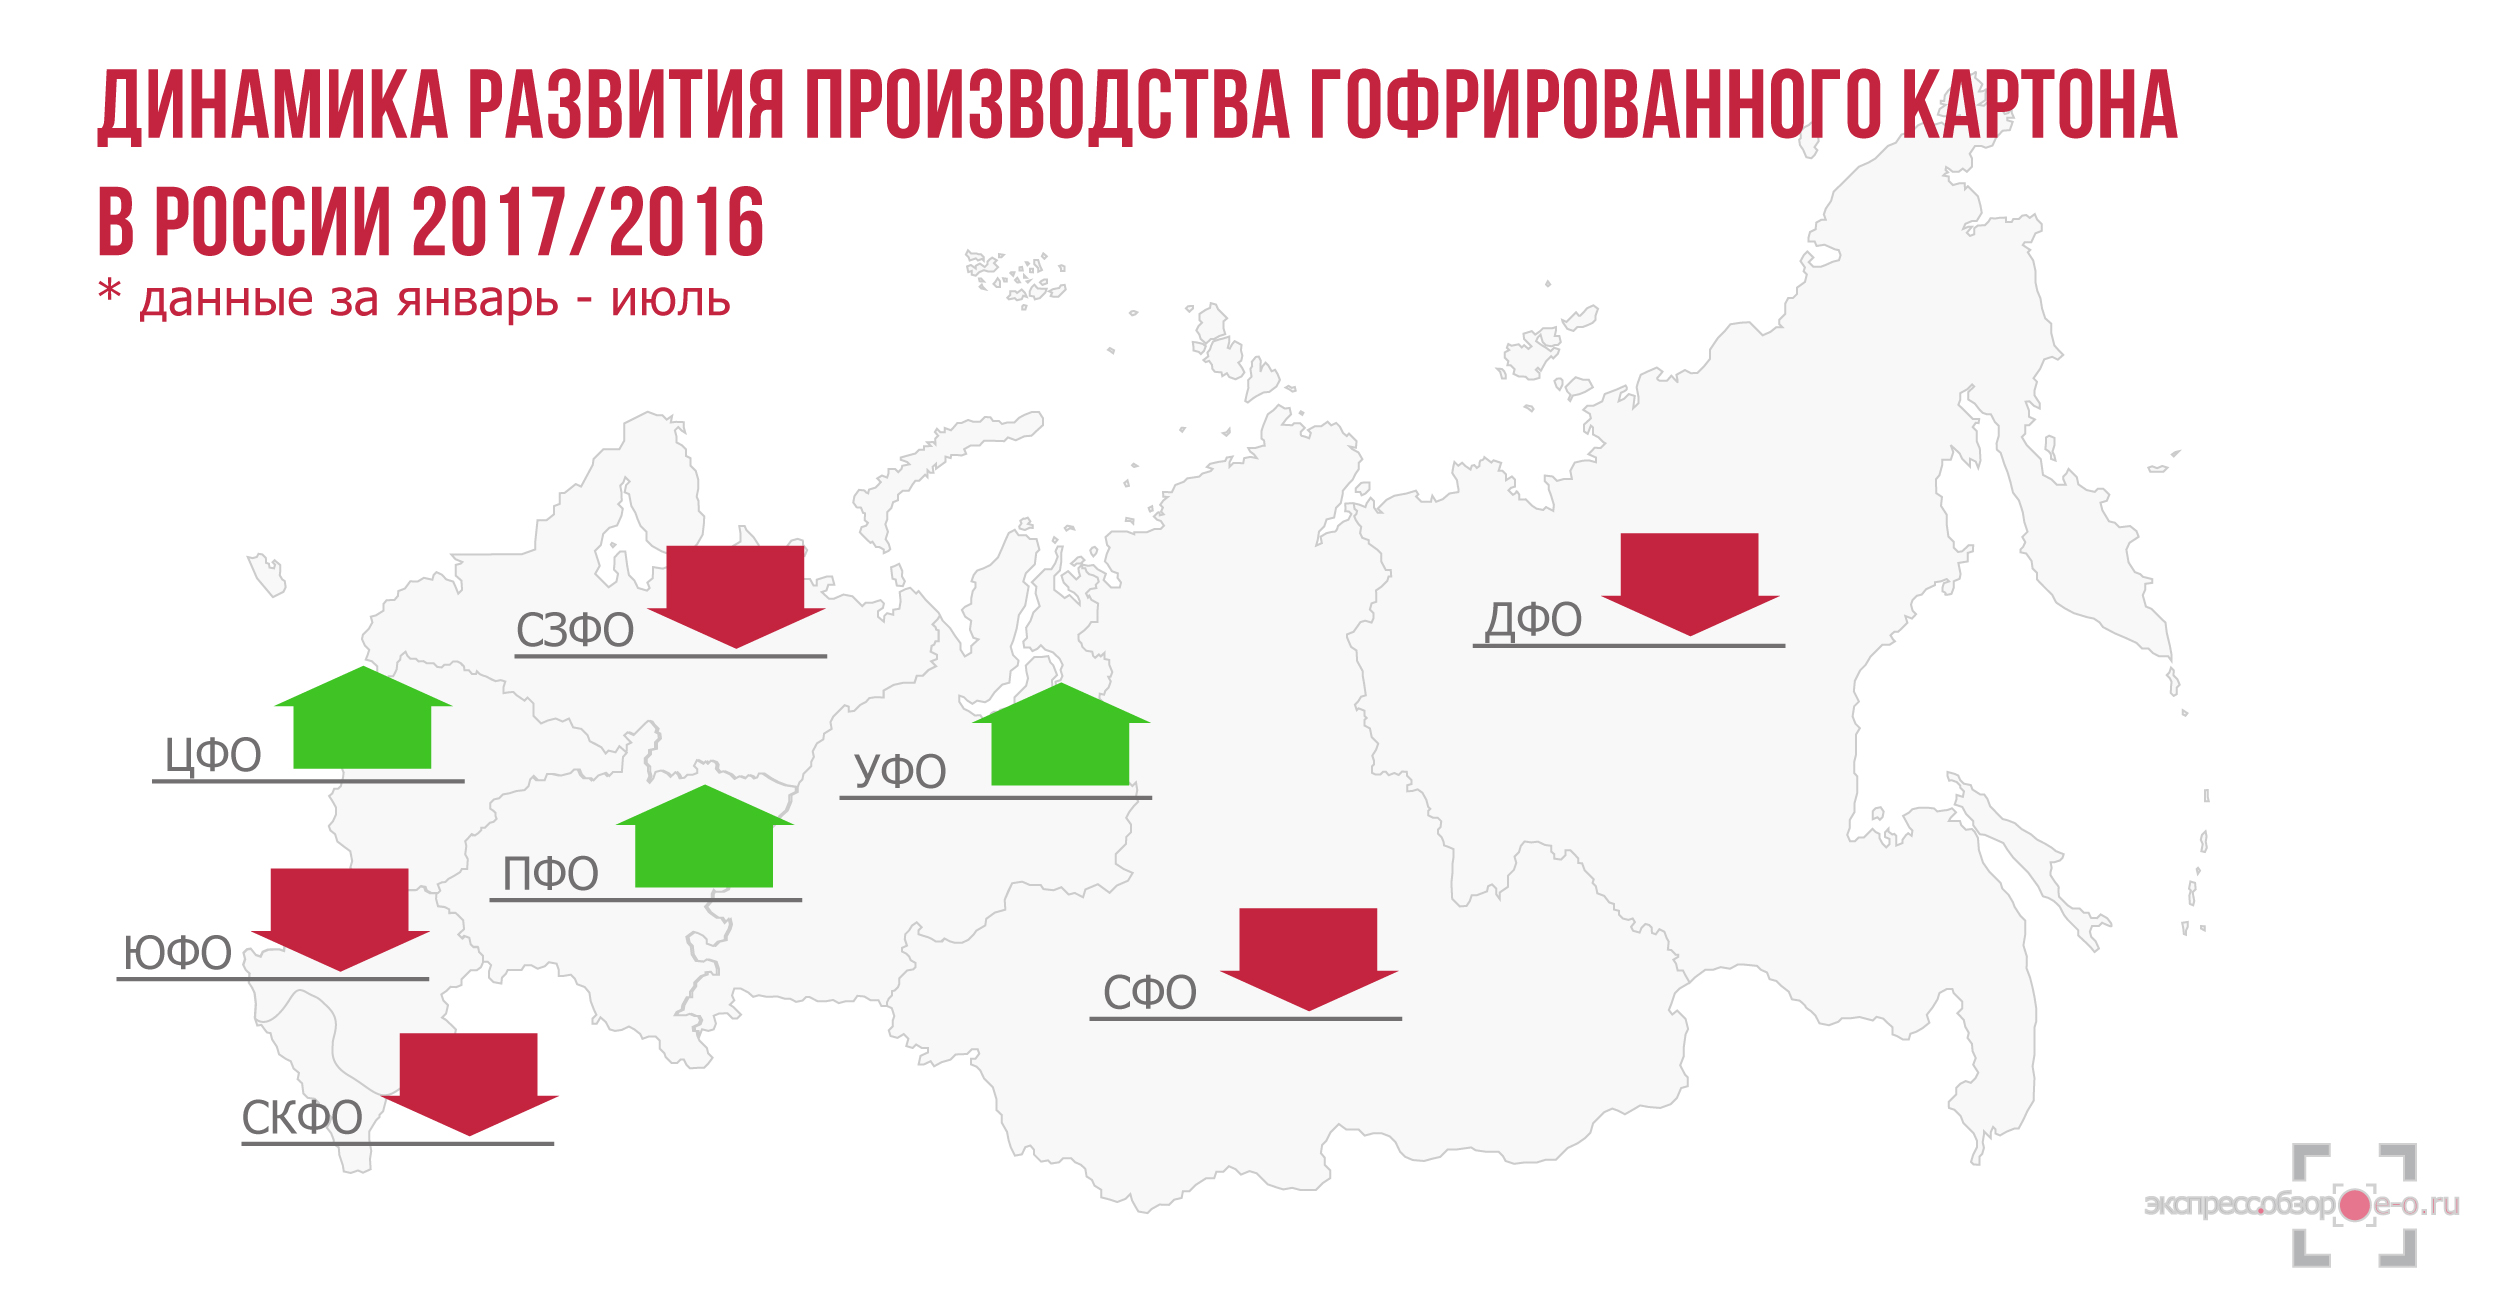 Рынок гофрированного картона в России в 2016 году